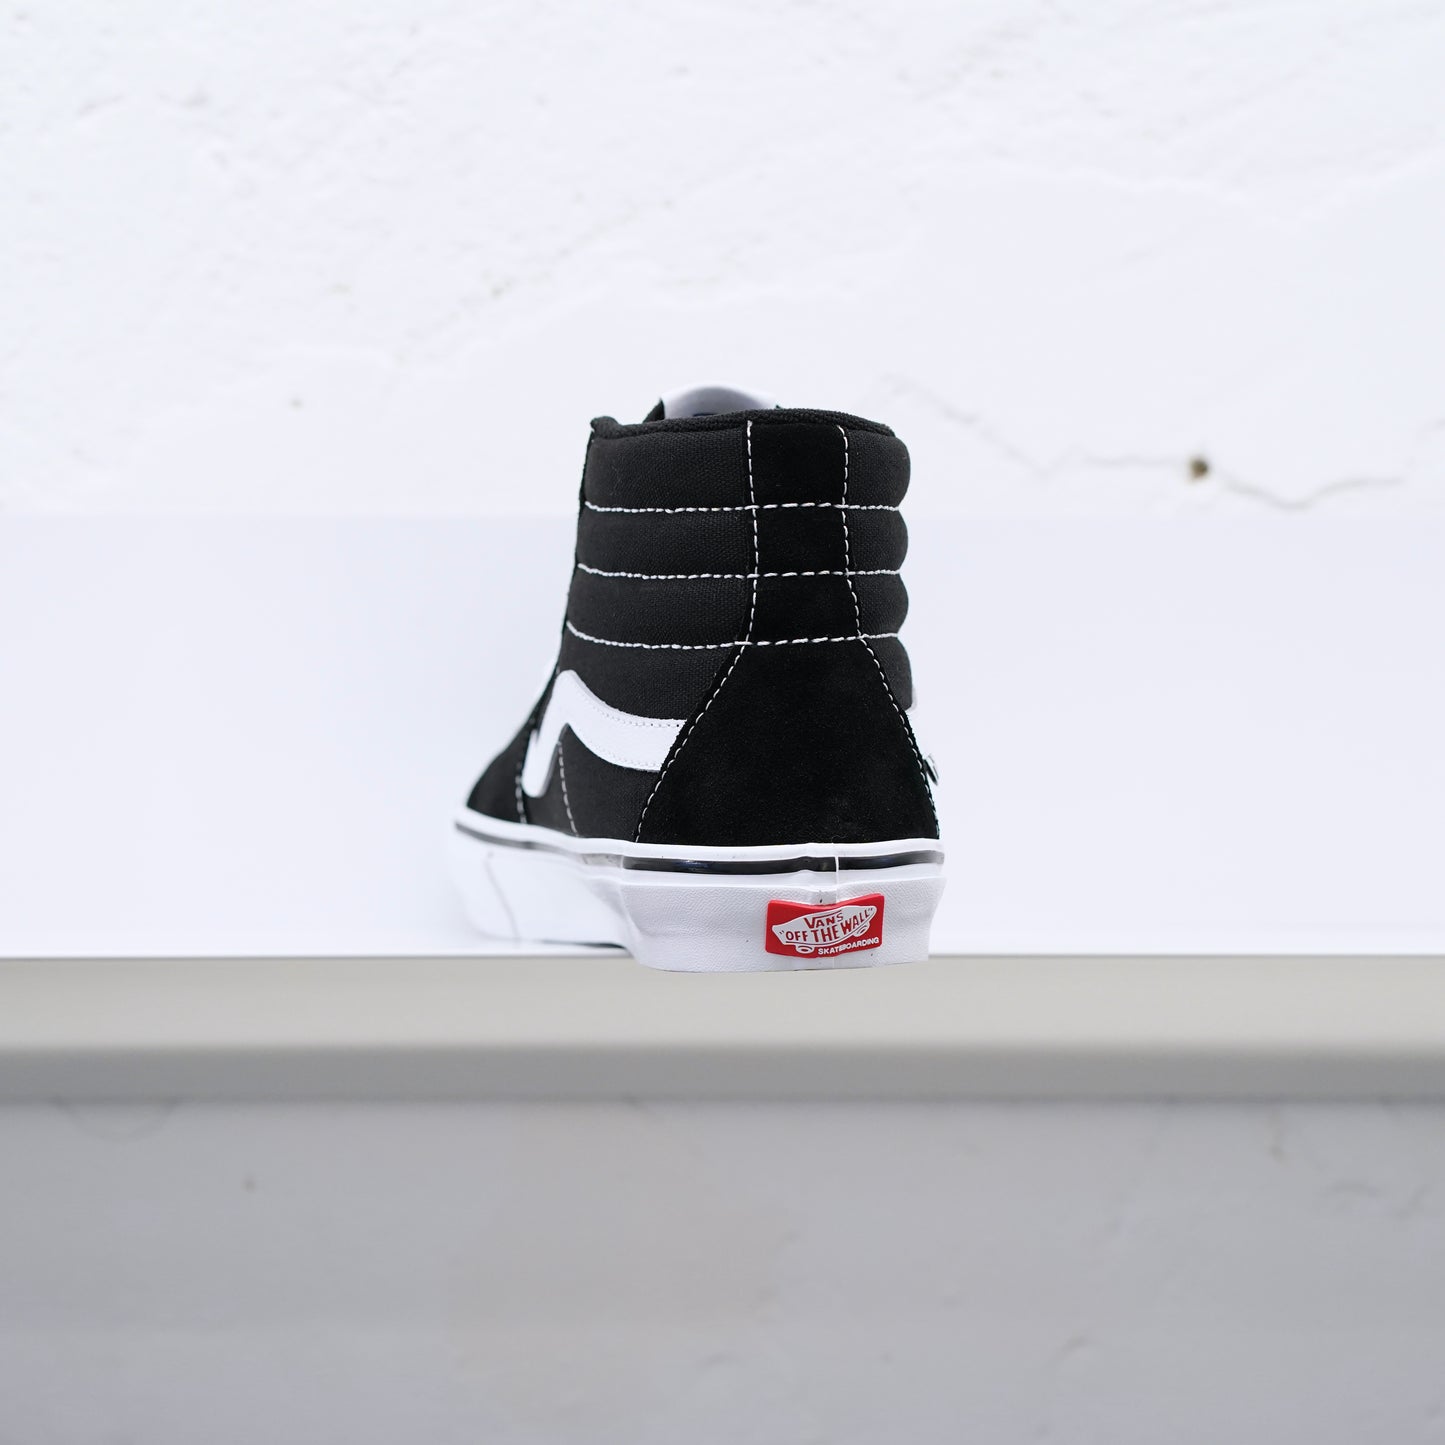 Vans - Sk8 Hi Skate Shoes - Black/White